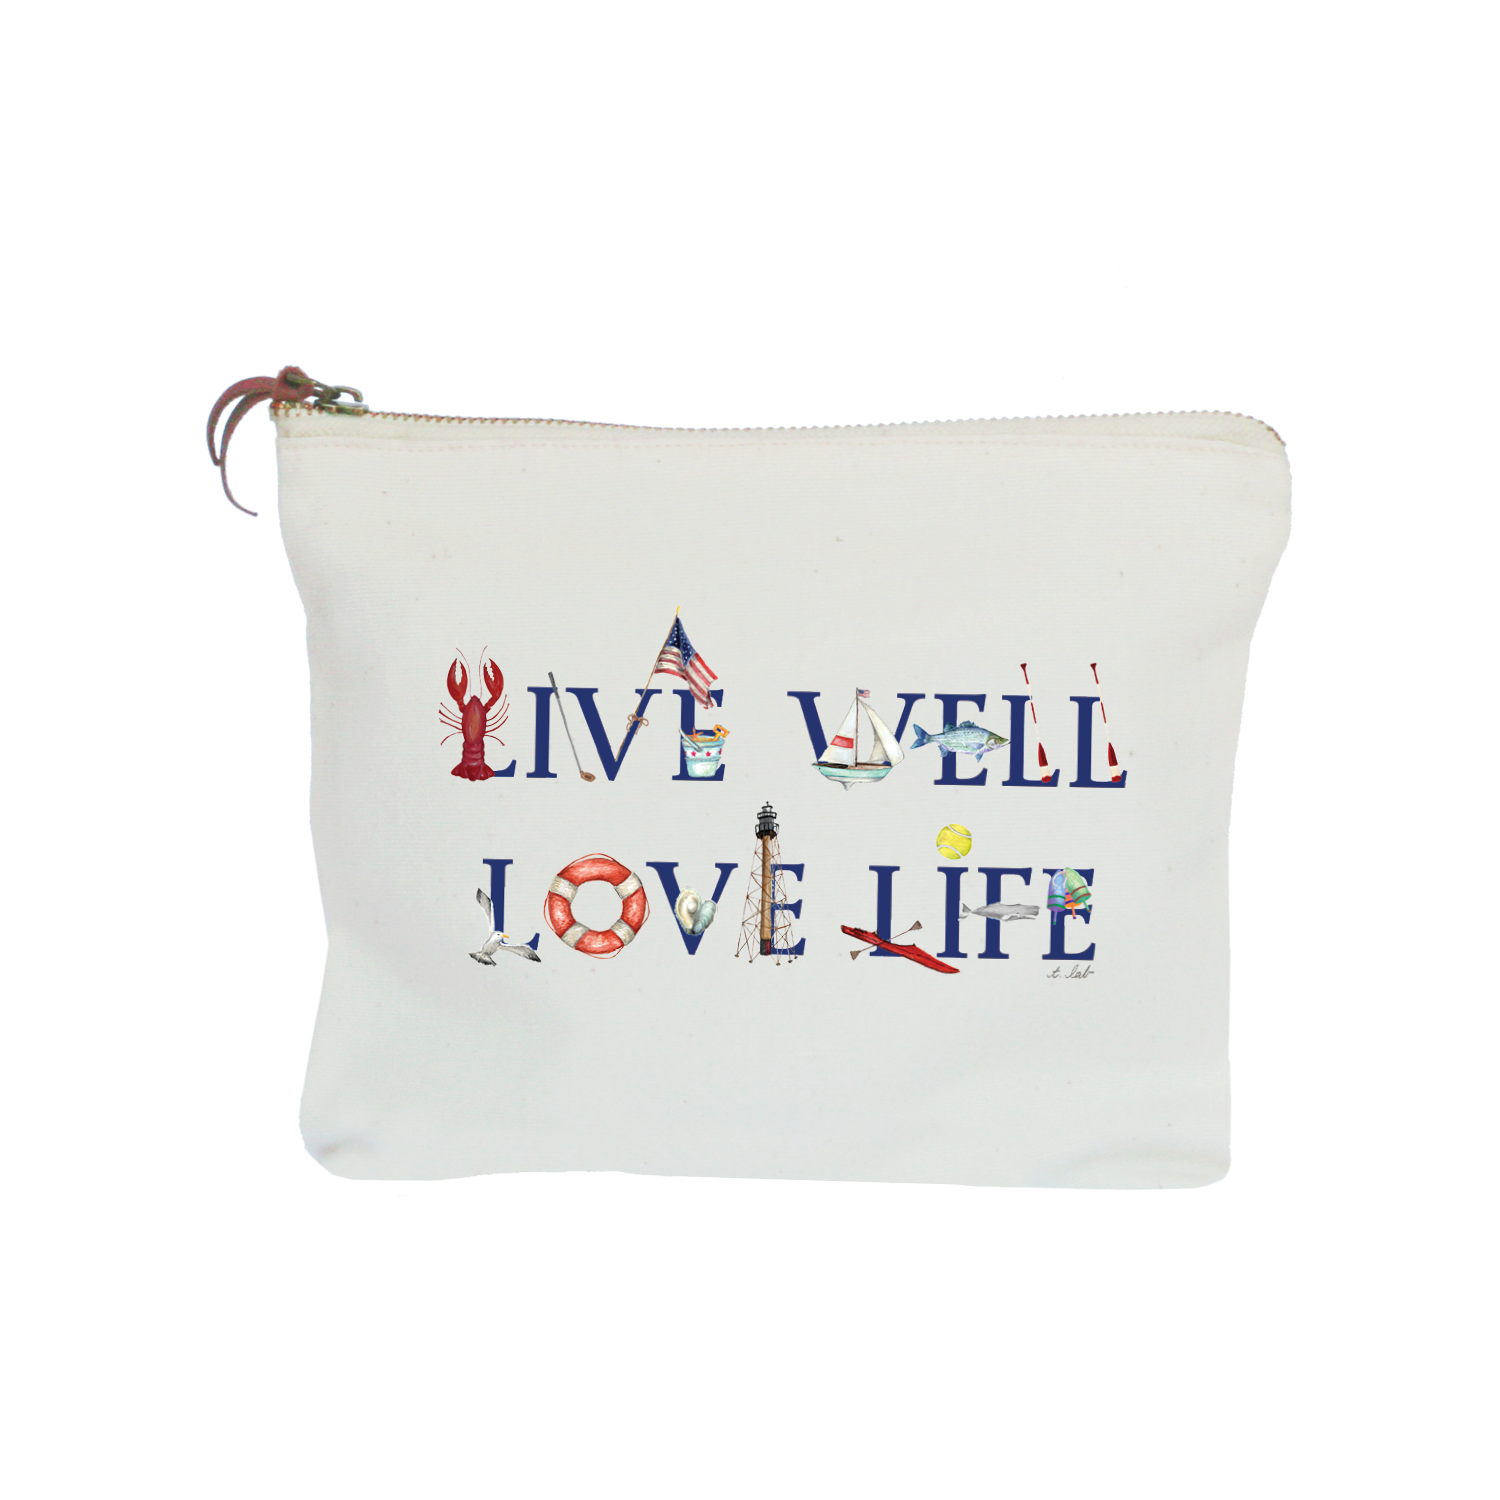 live well love life zipper pouch